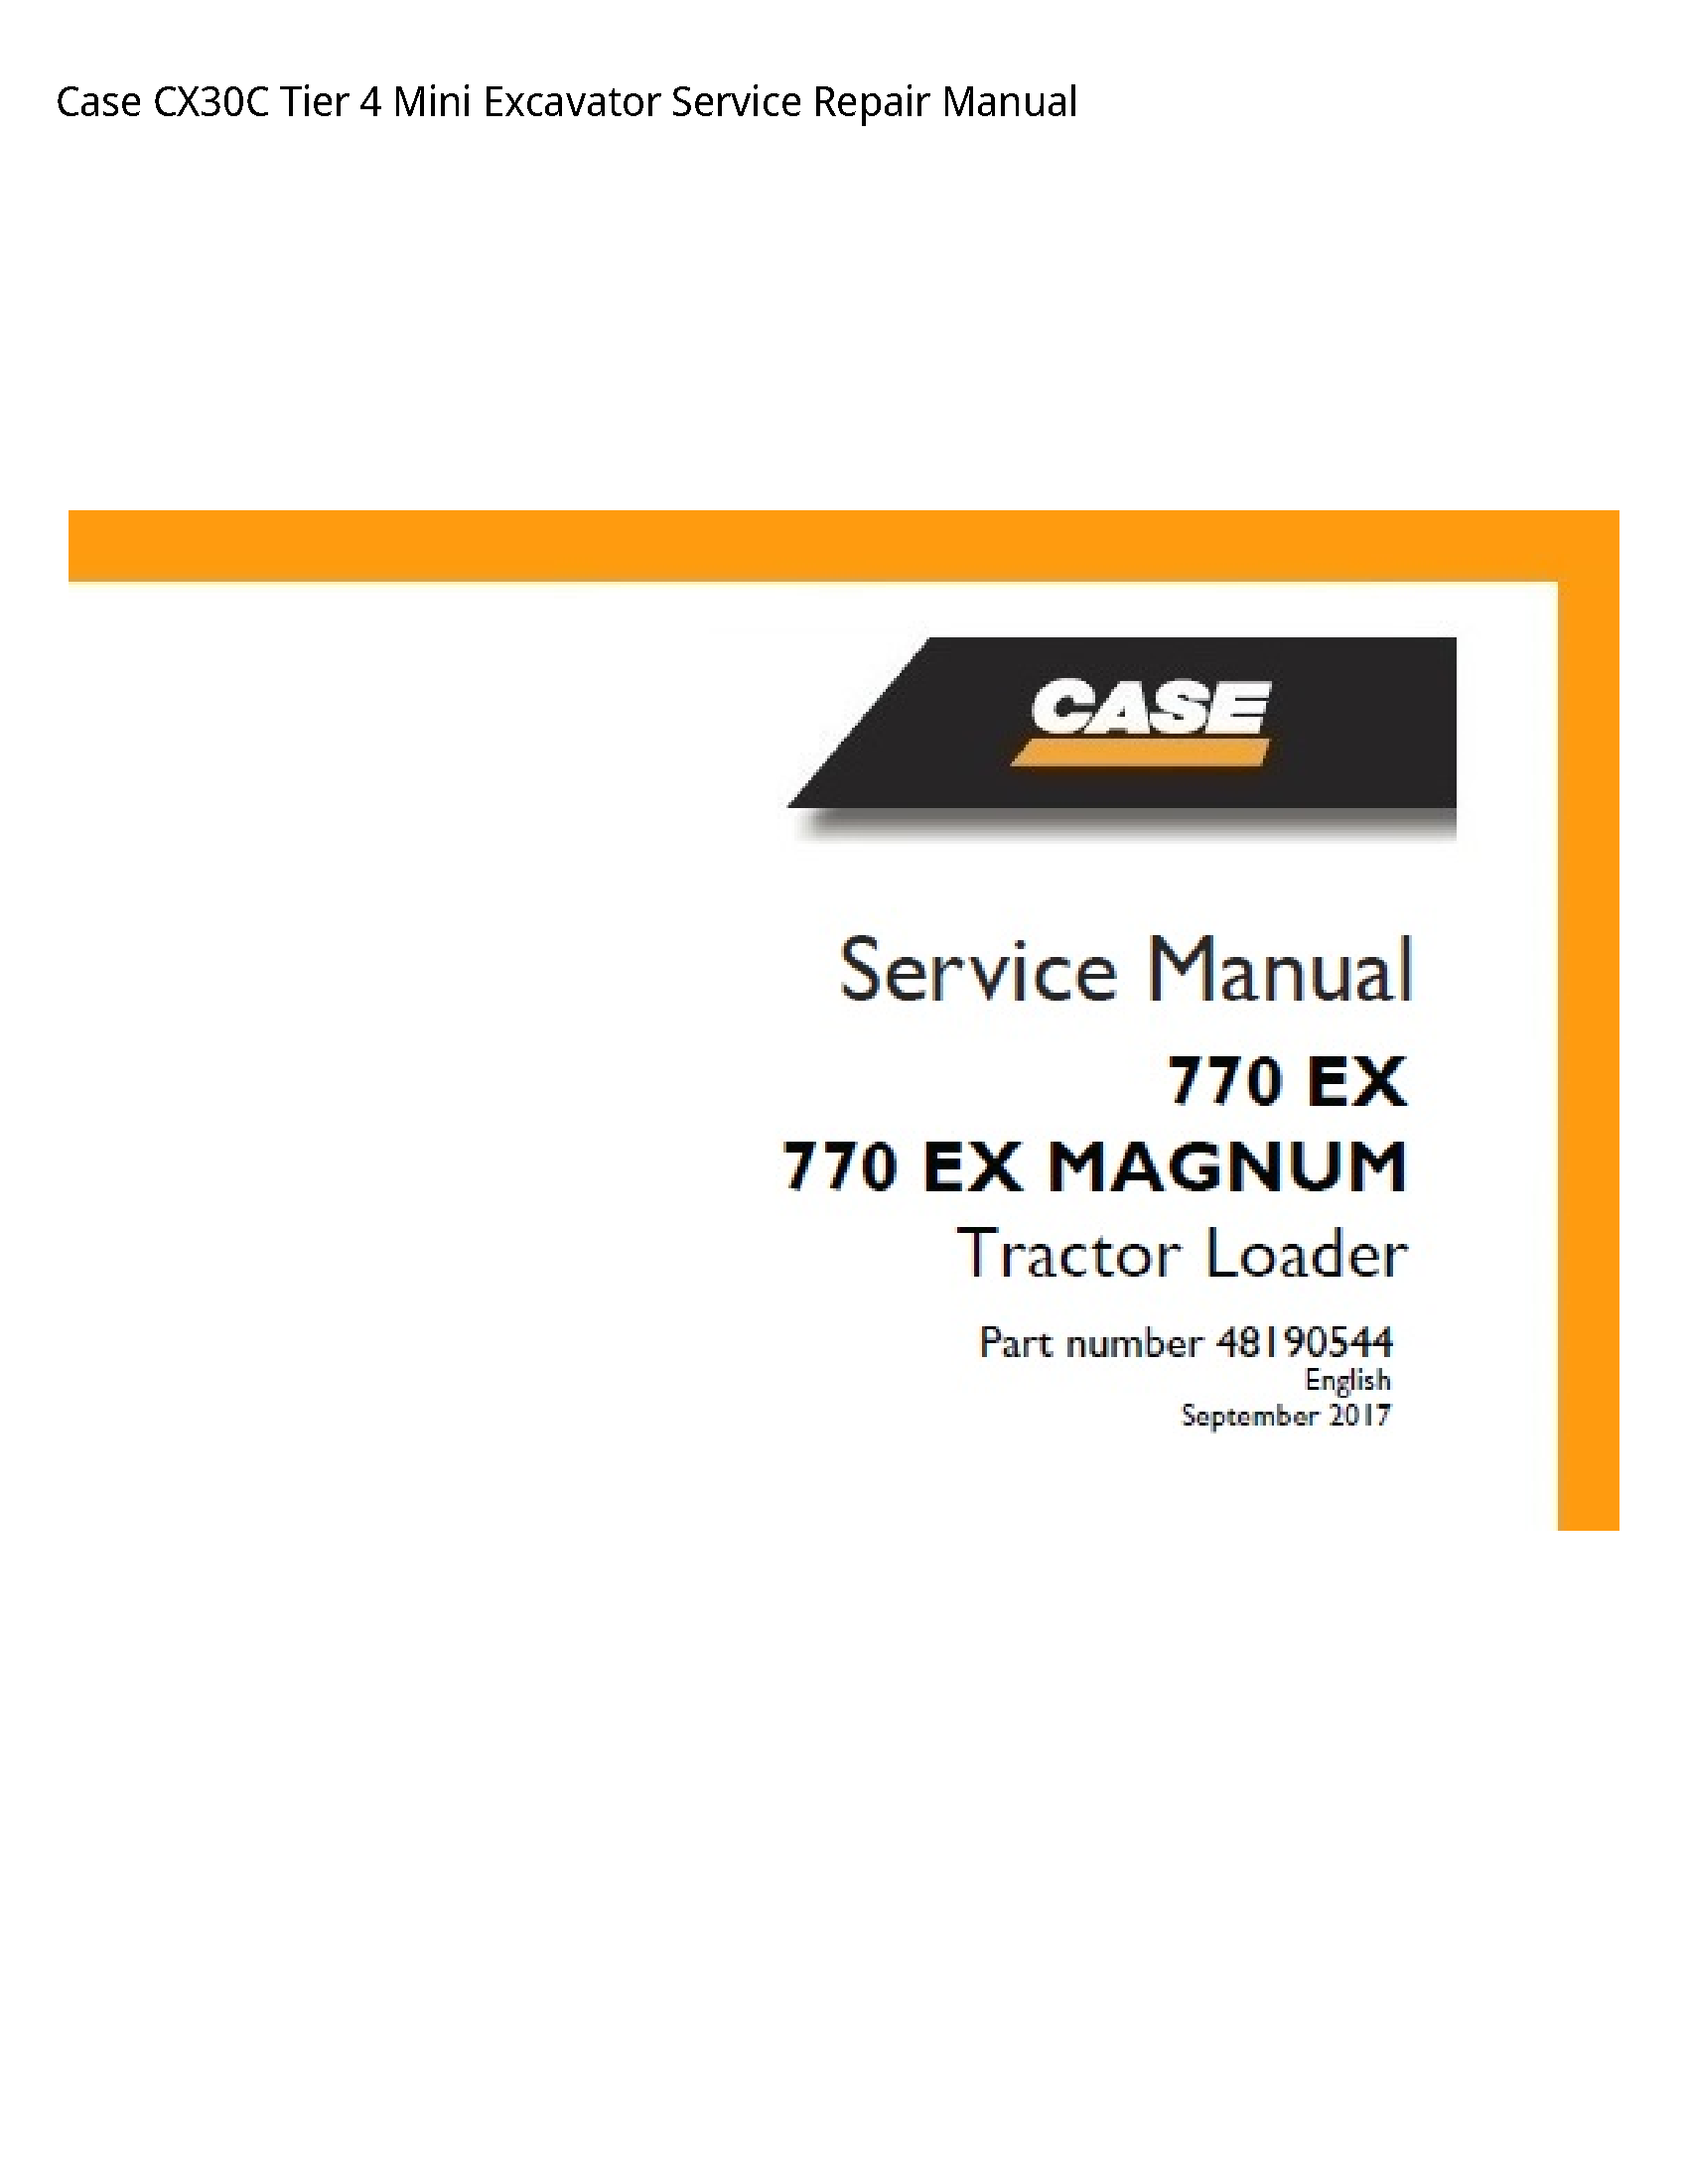 Case/Case IH CX30C Tier Mini Excavator manual